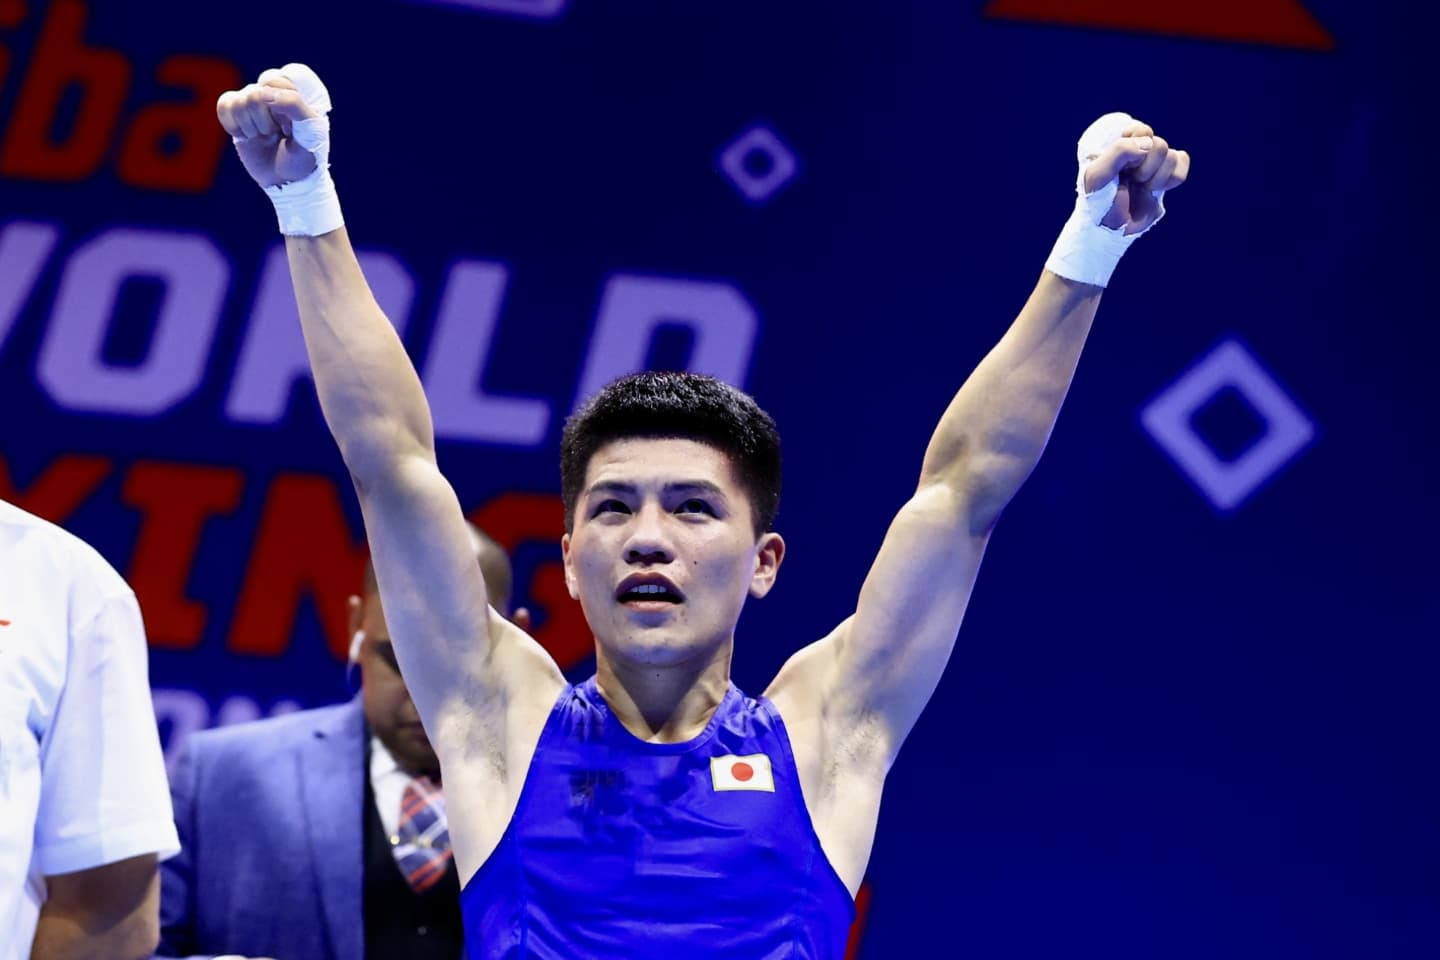 Kazakhstan's world champion Bibossinov among winners at Asian Boxing Championships